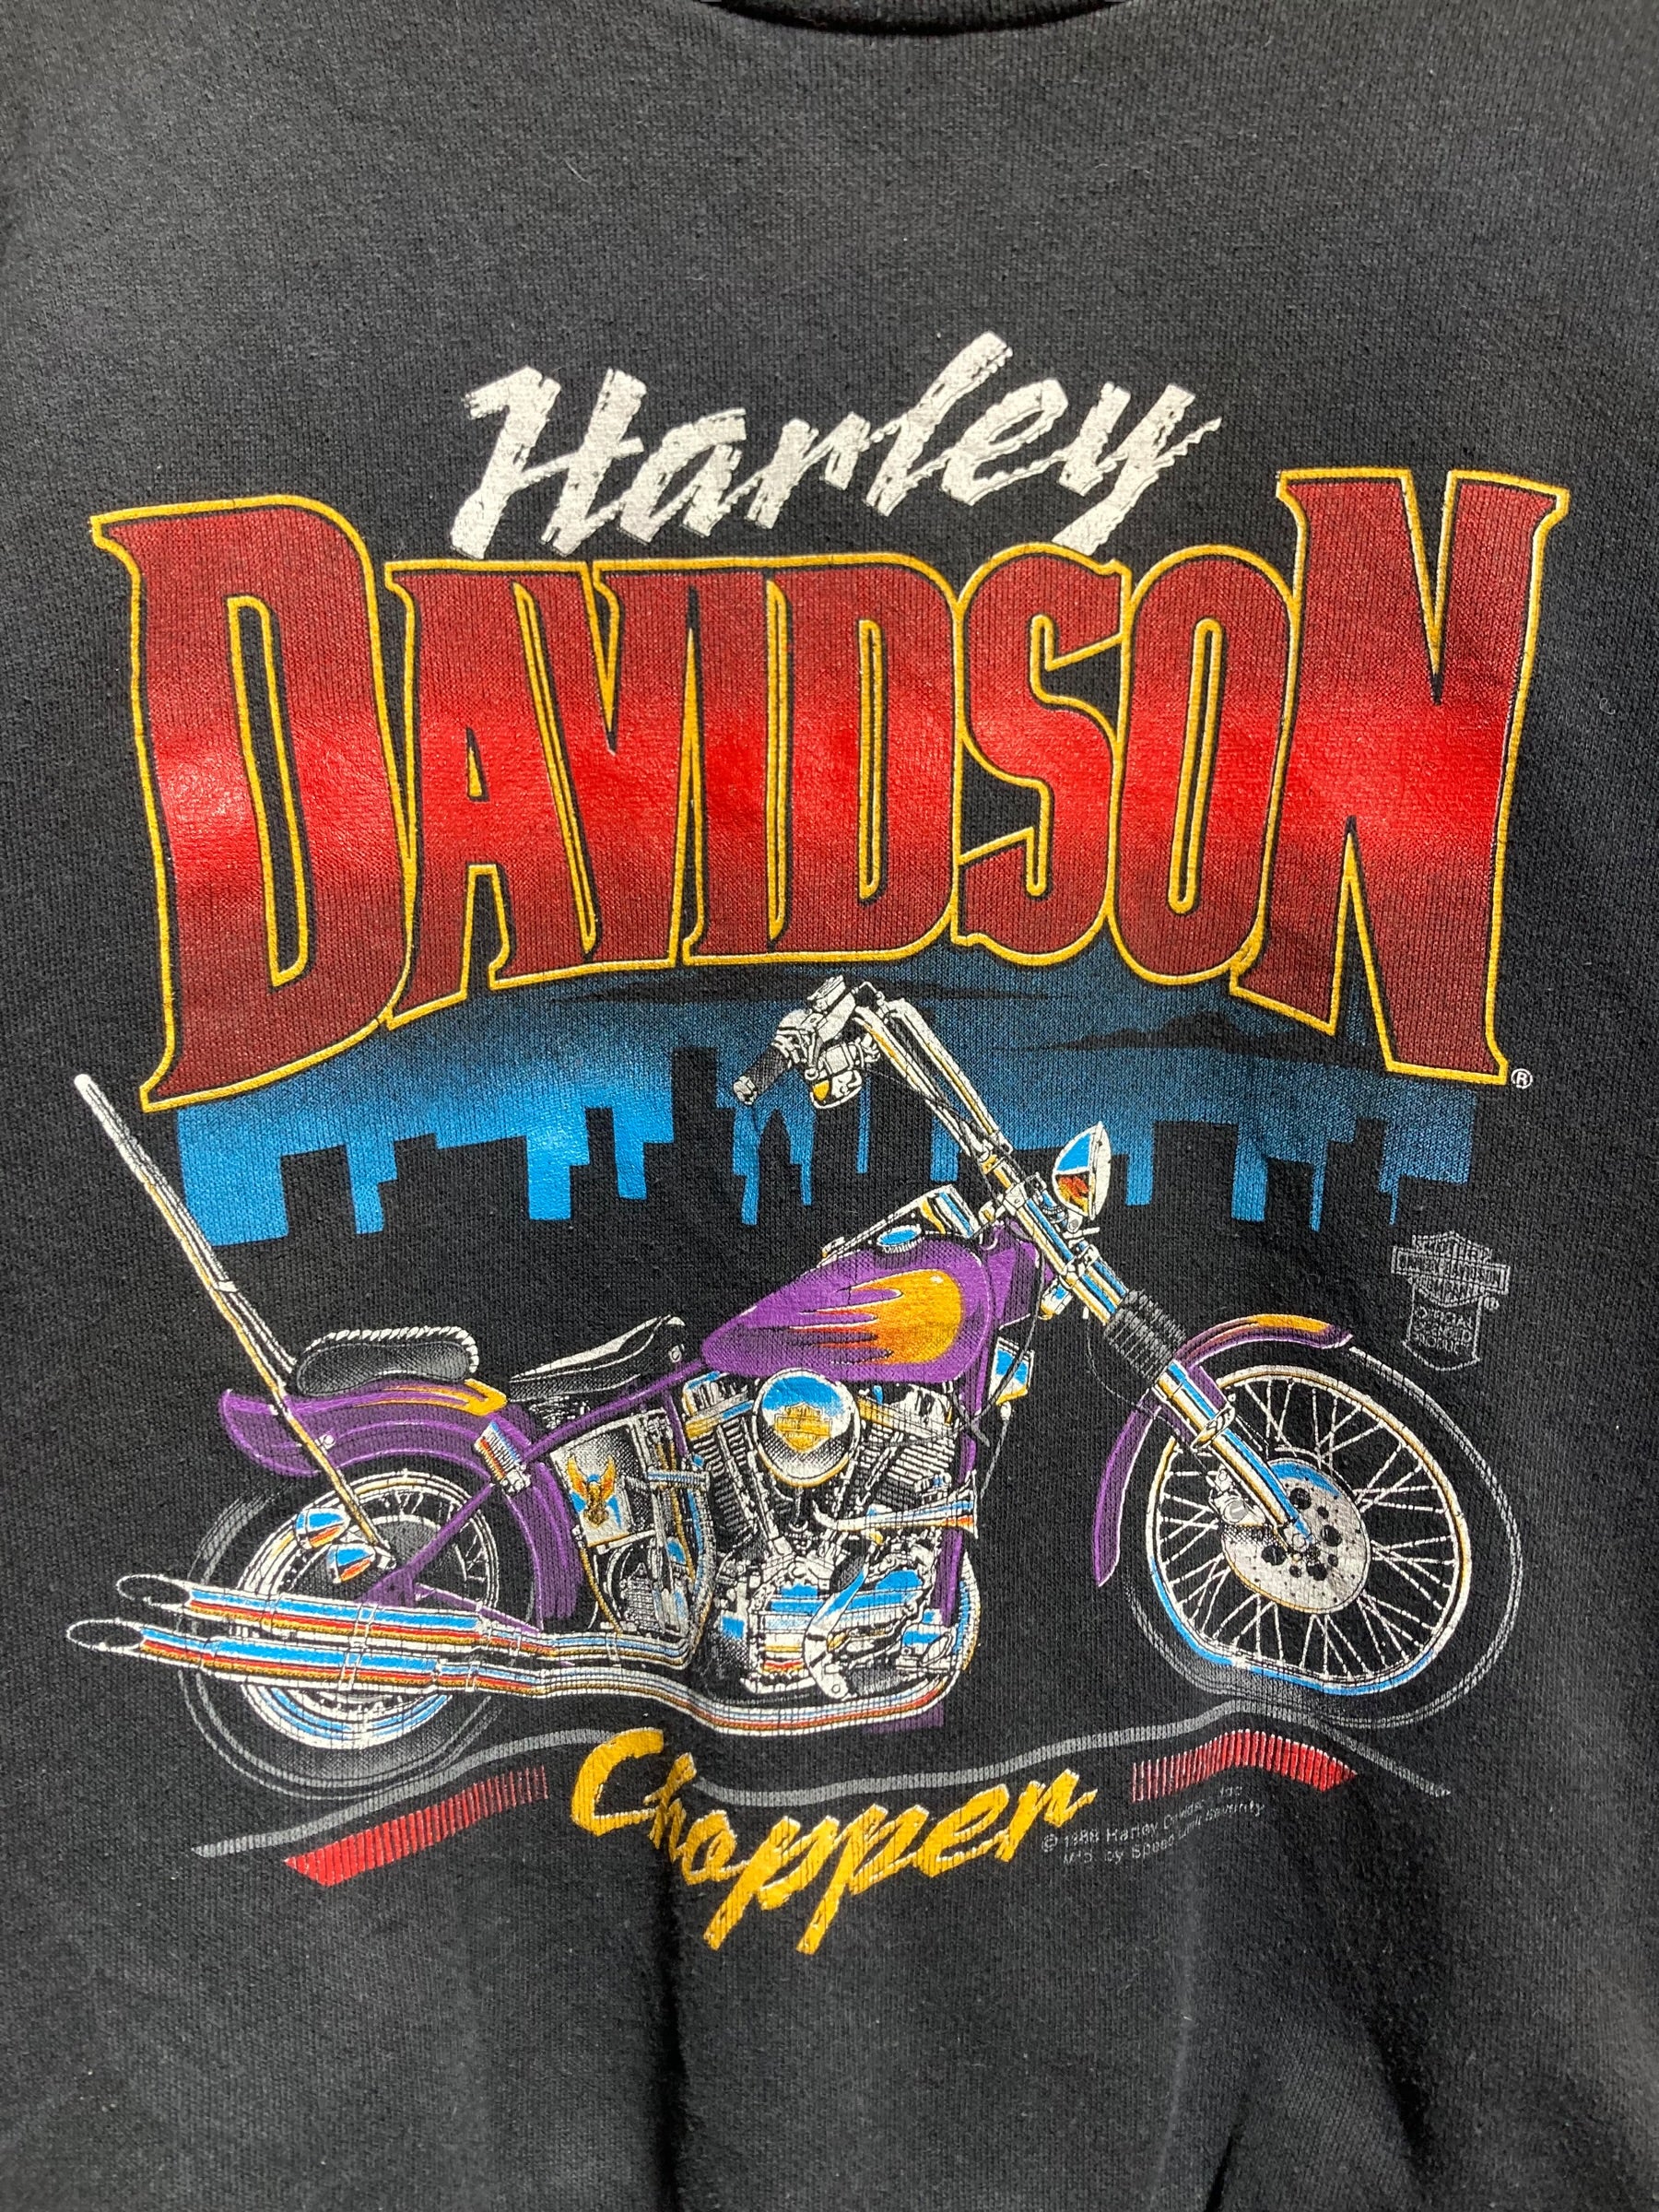 Harley Davidson ハーレーダビッドソン 80s スウェット トレーナー